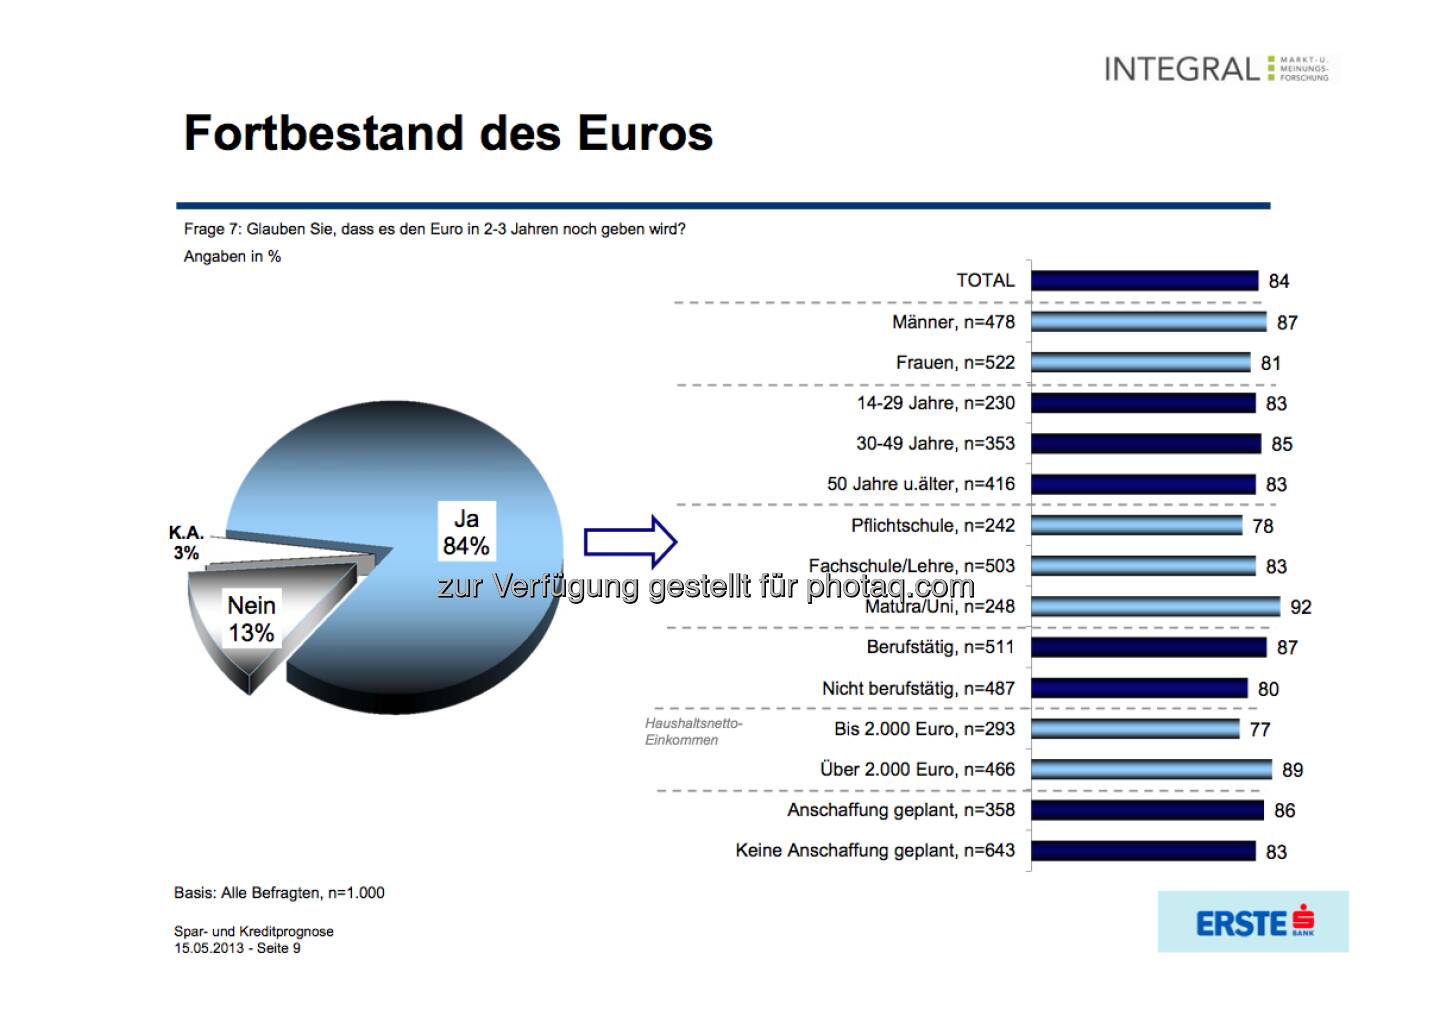 Fortbestand des Euros? (c) Integral / Erste Bank